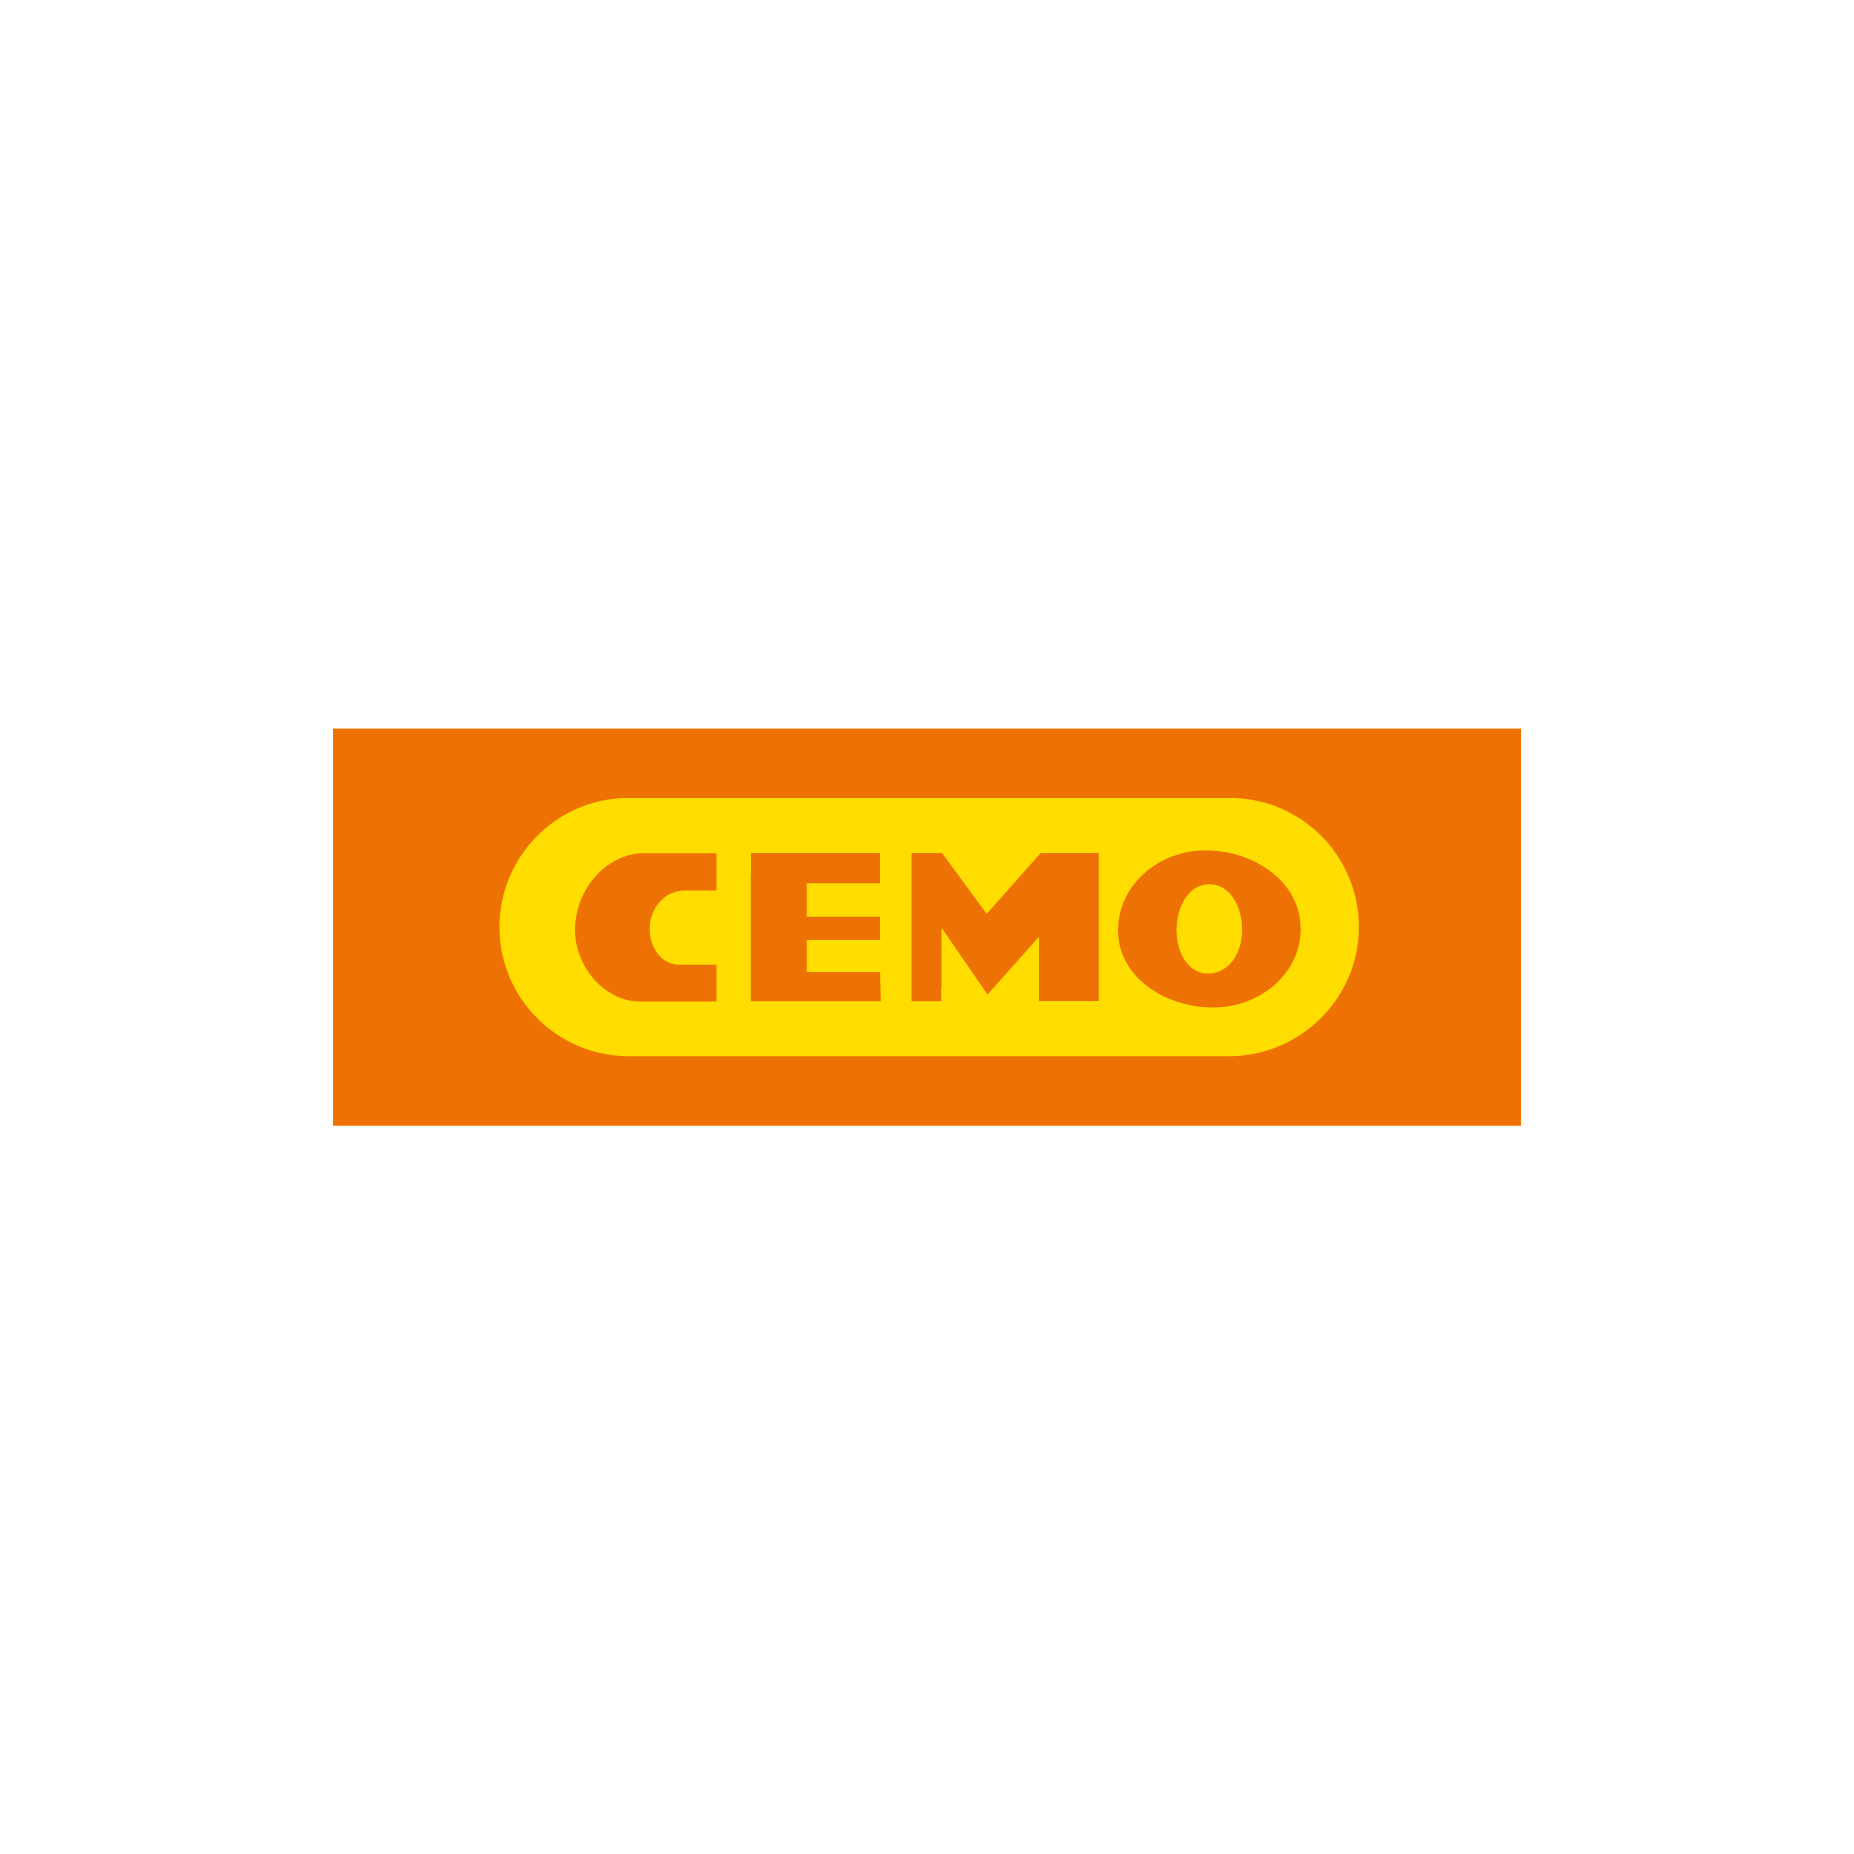 Cemo Logo